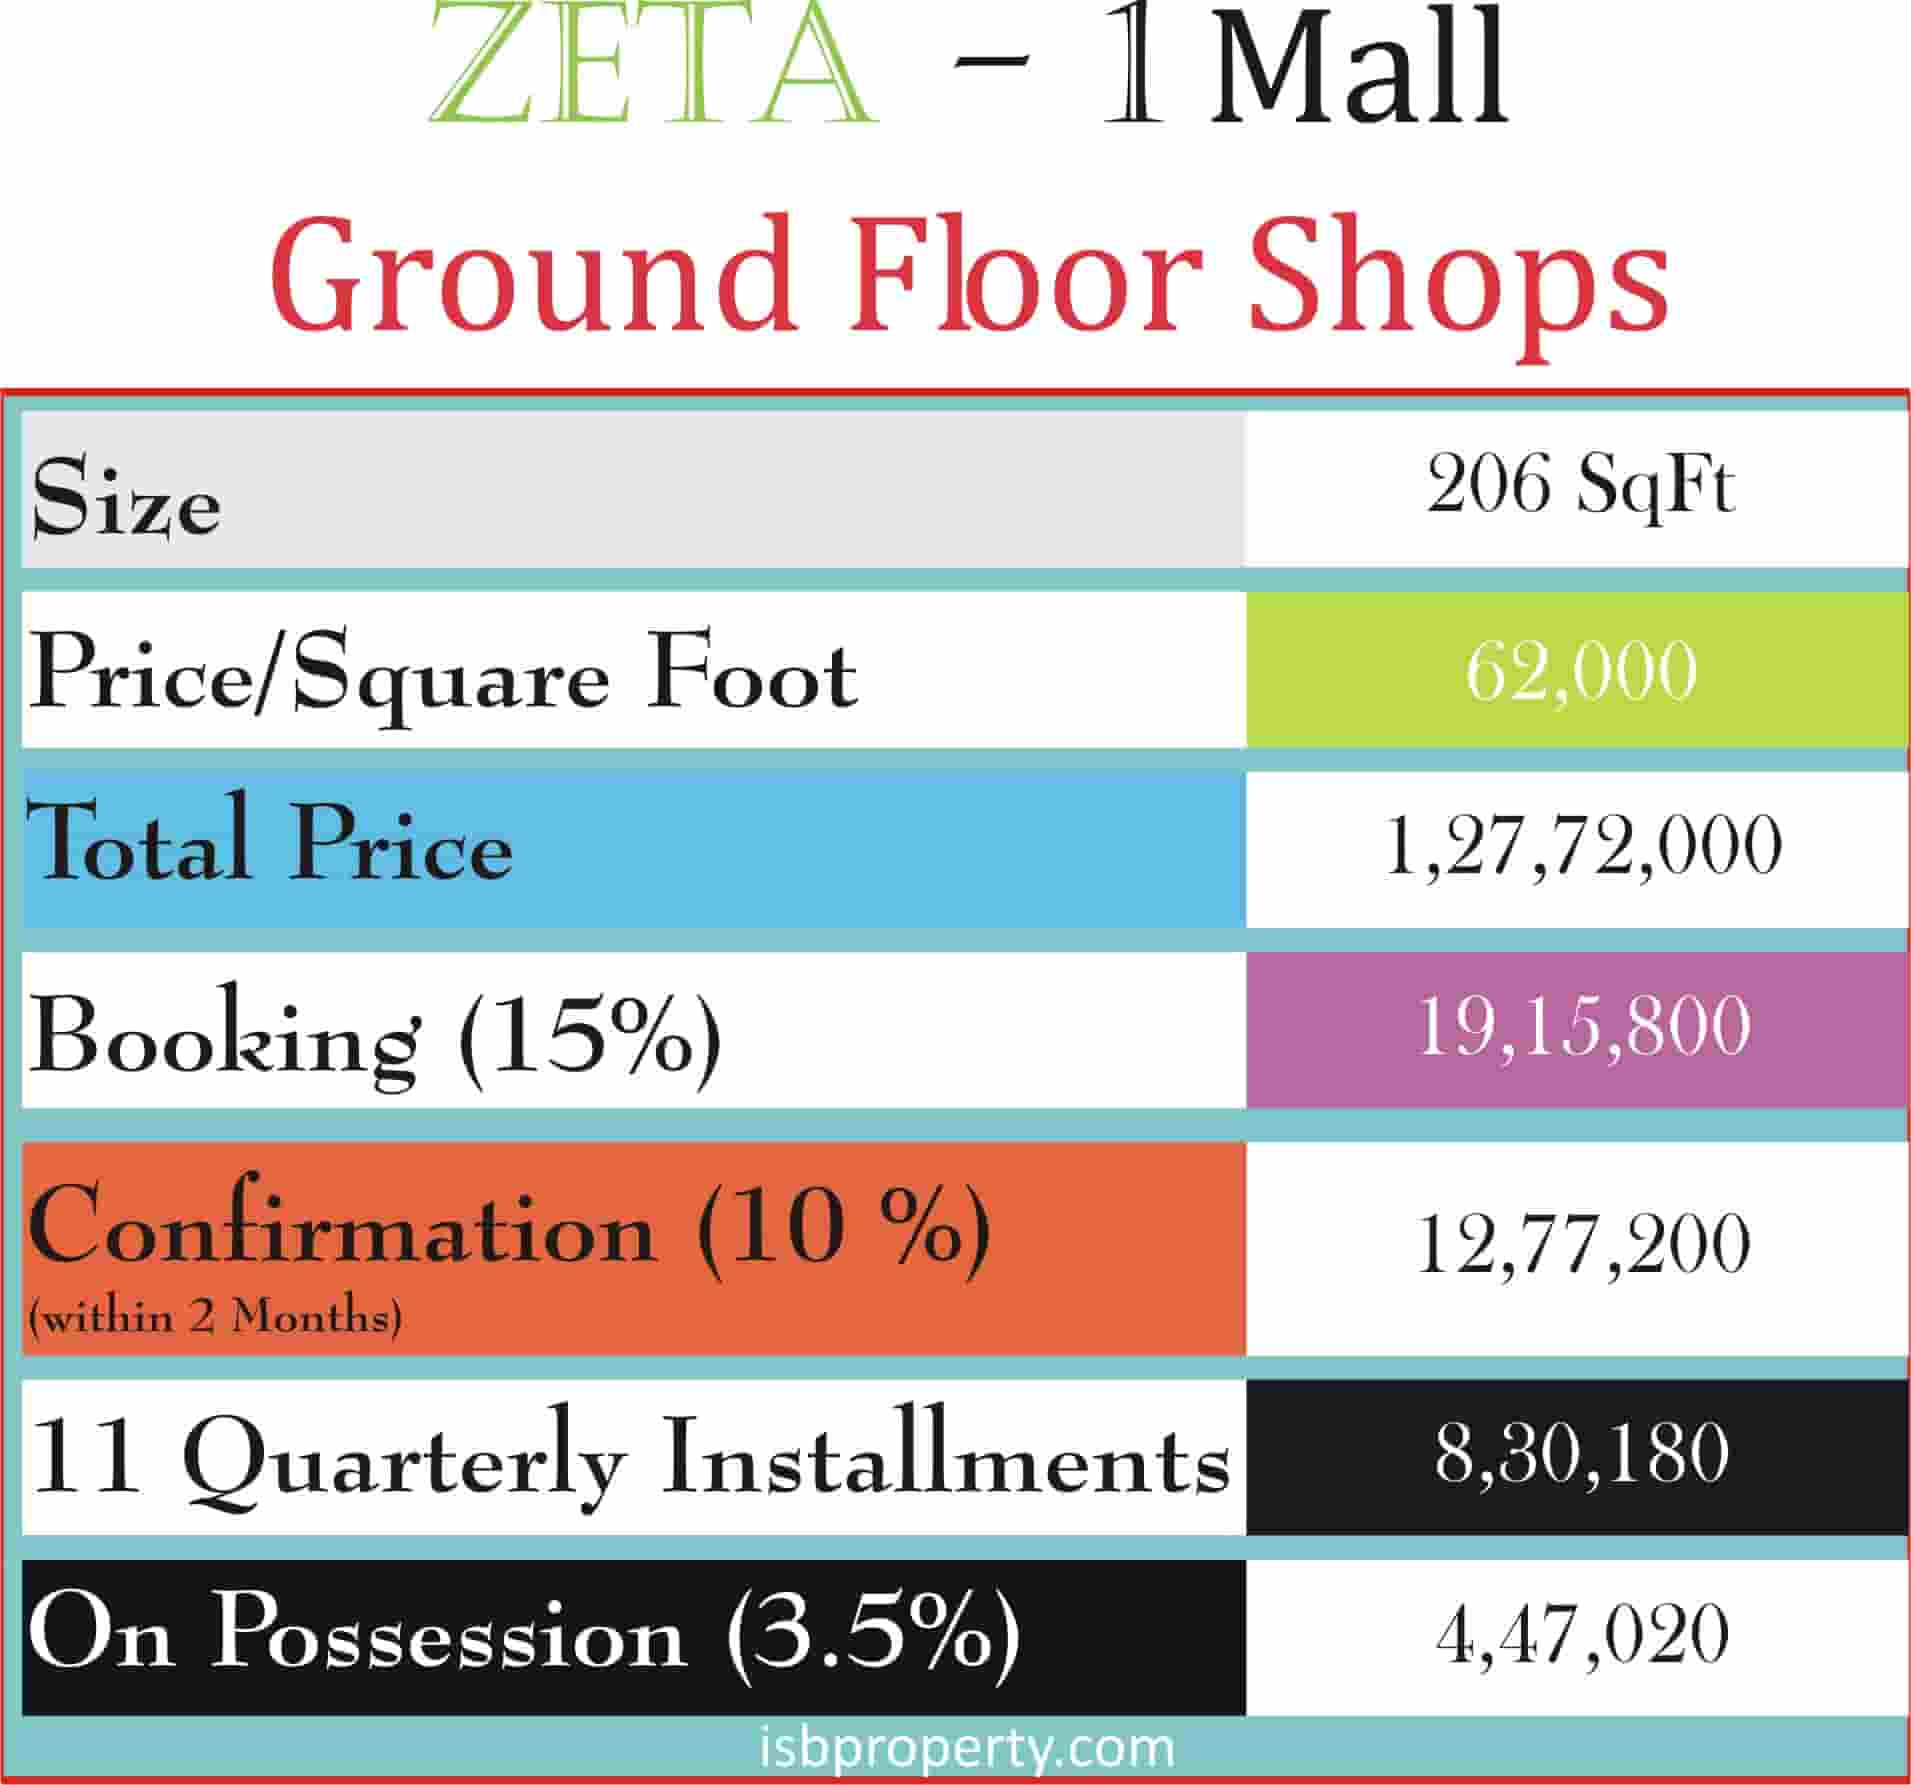 Zeta-1 Mall Ground Floor Payment Plan